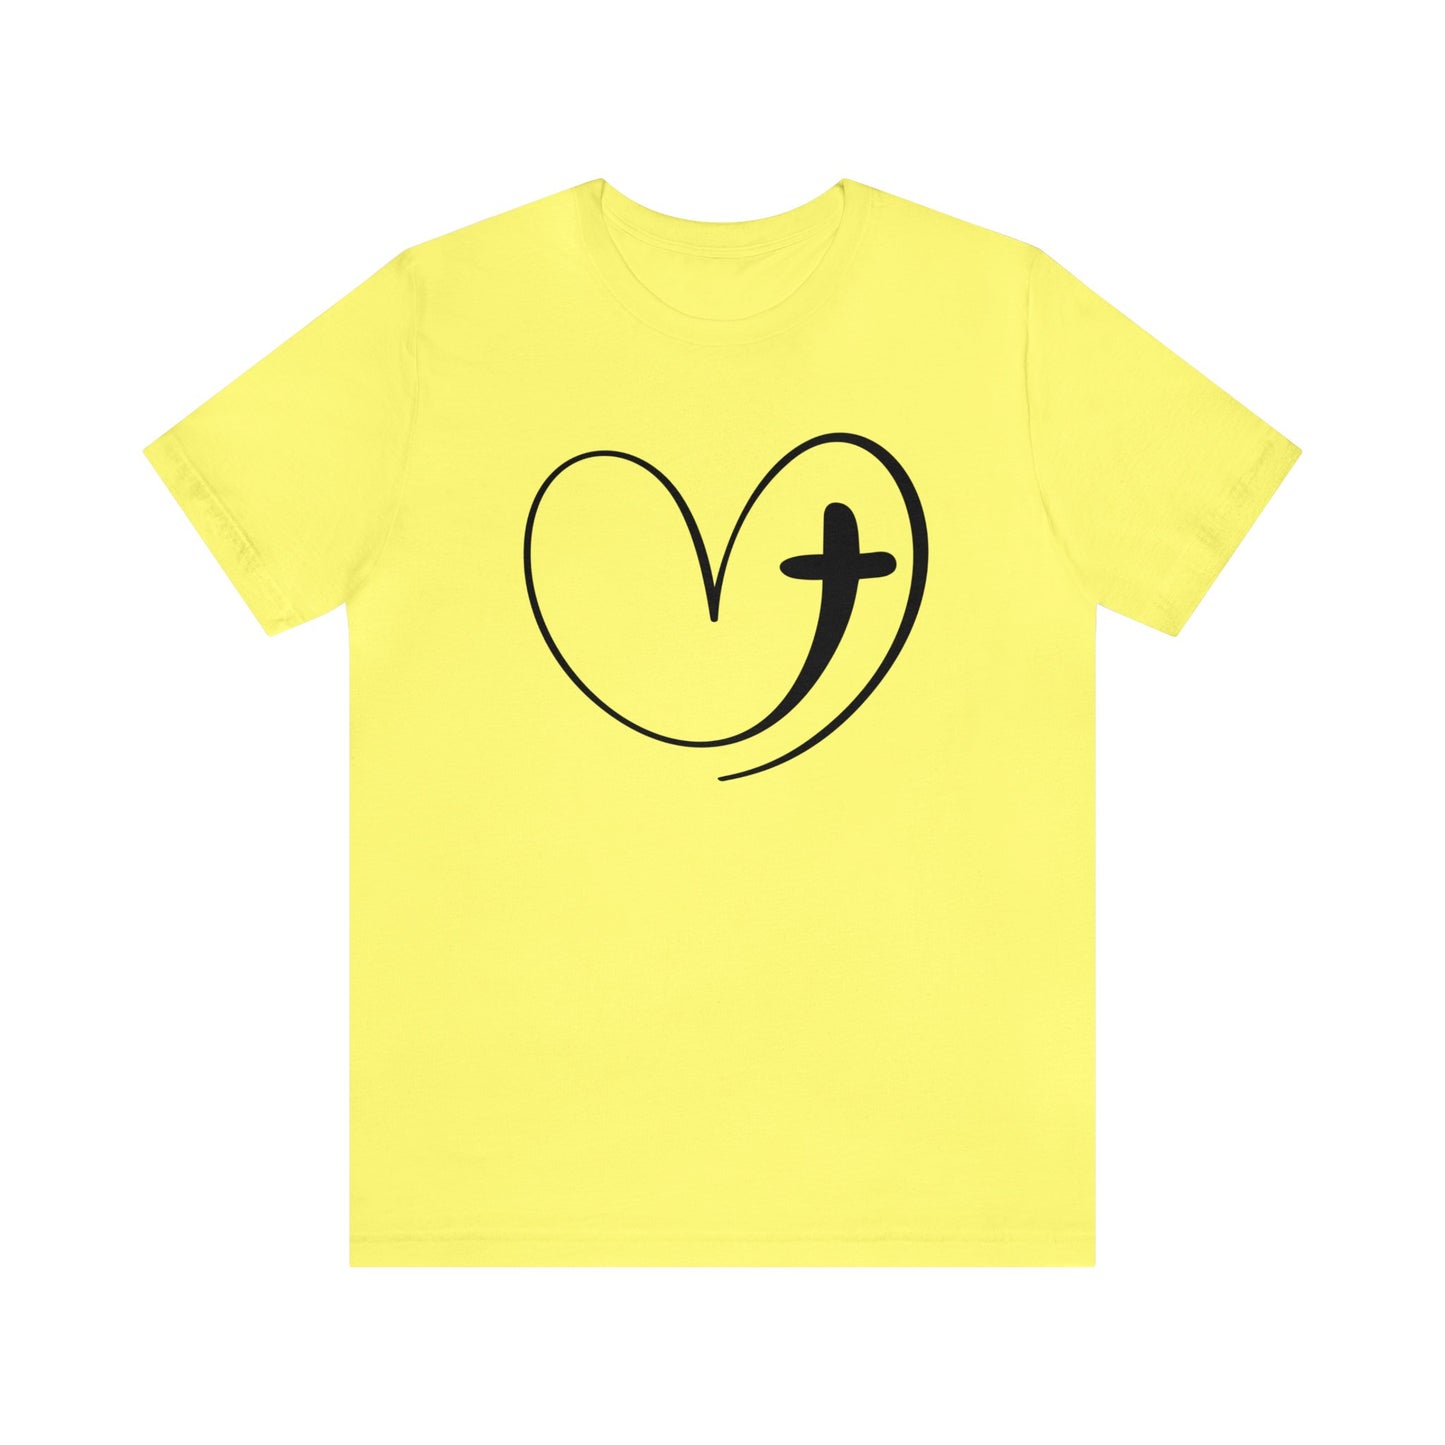 Heart T-Shirt For Easter TShirt For Christian Cross T Shirt